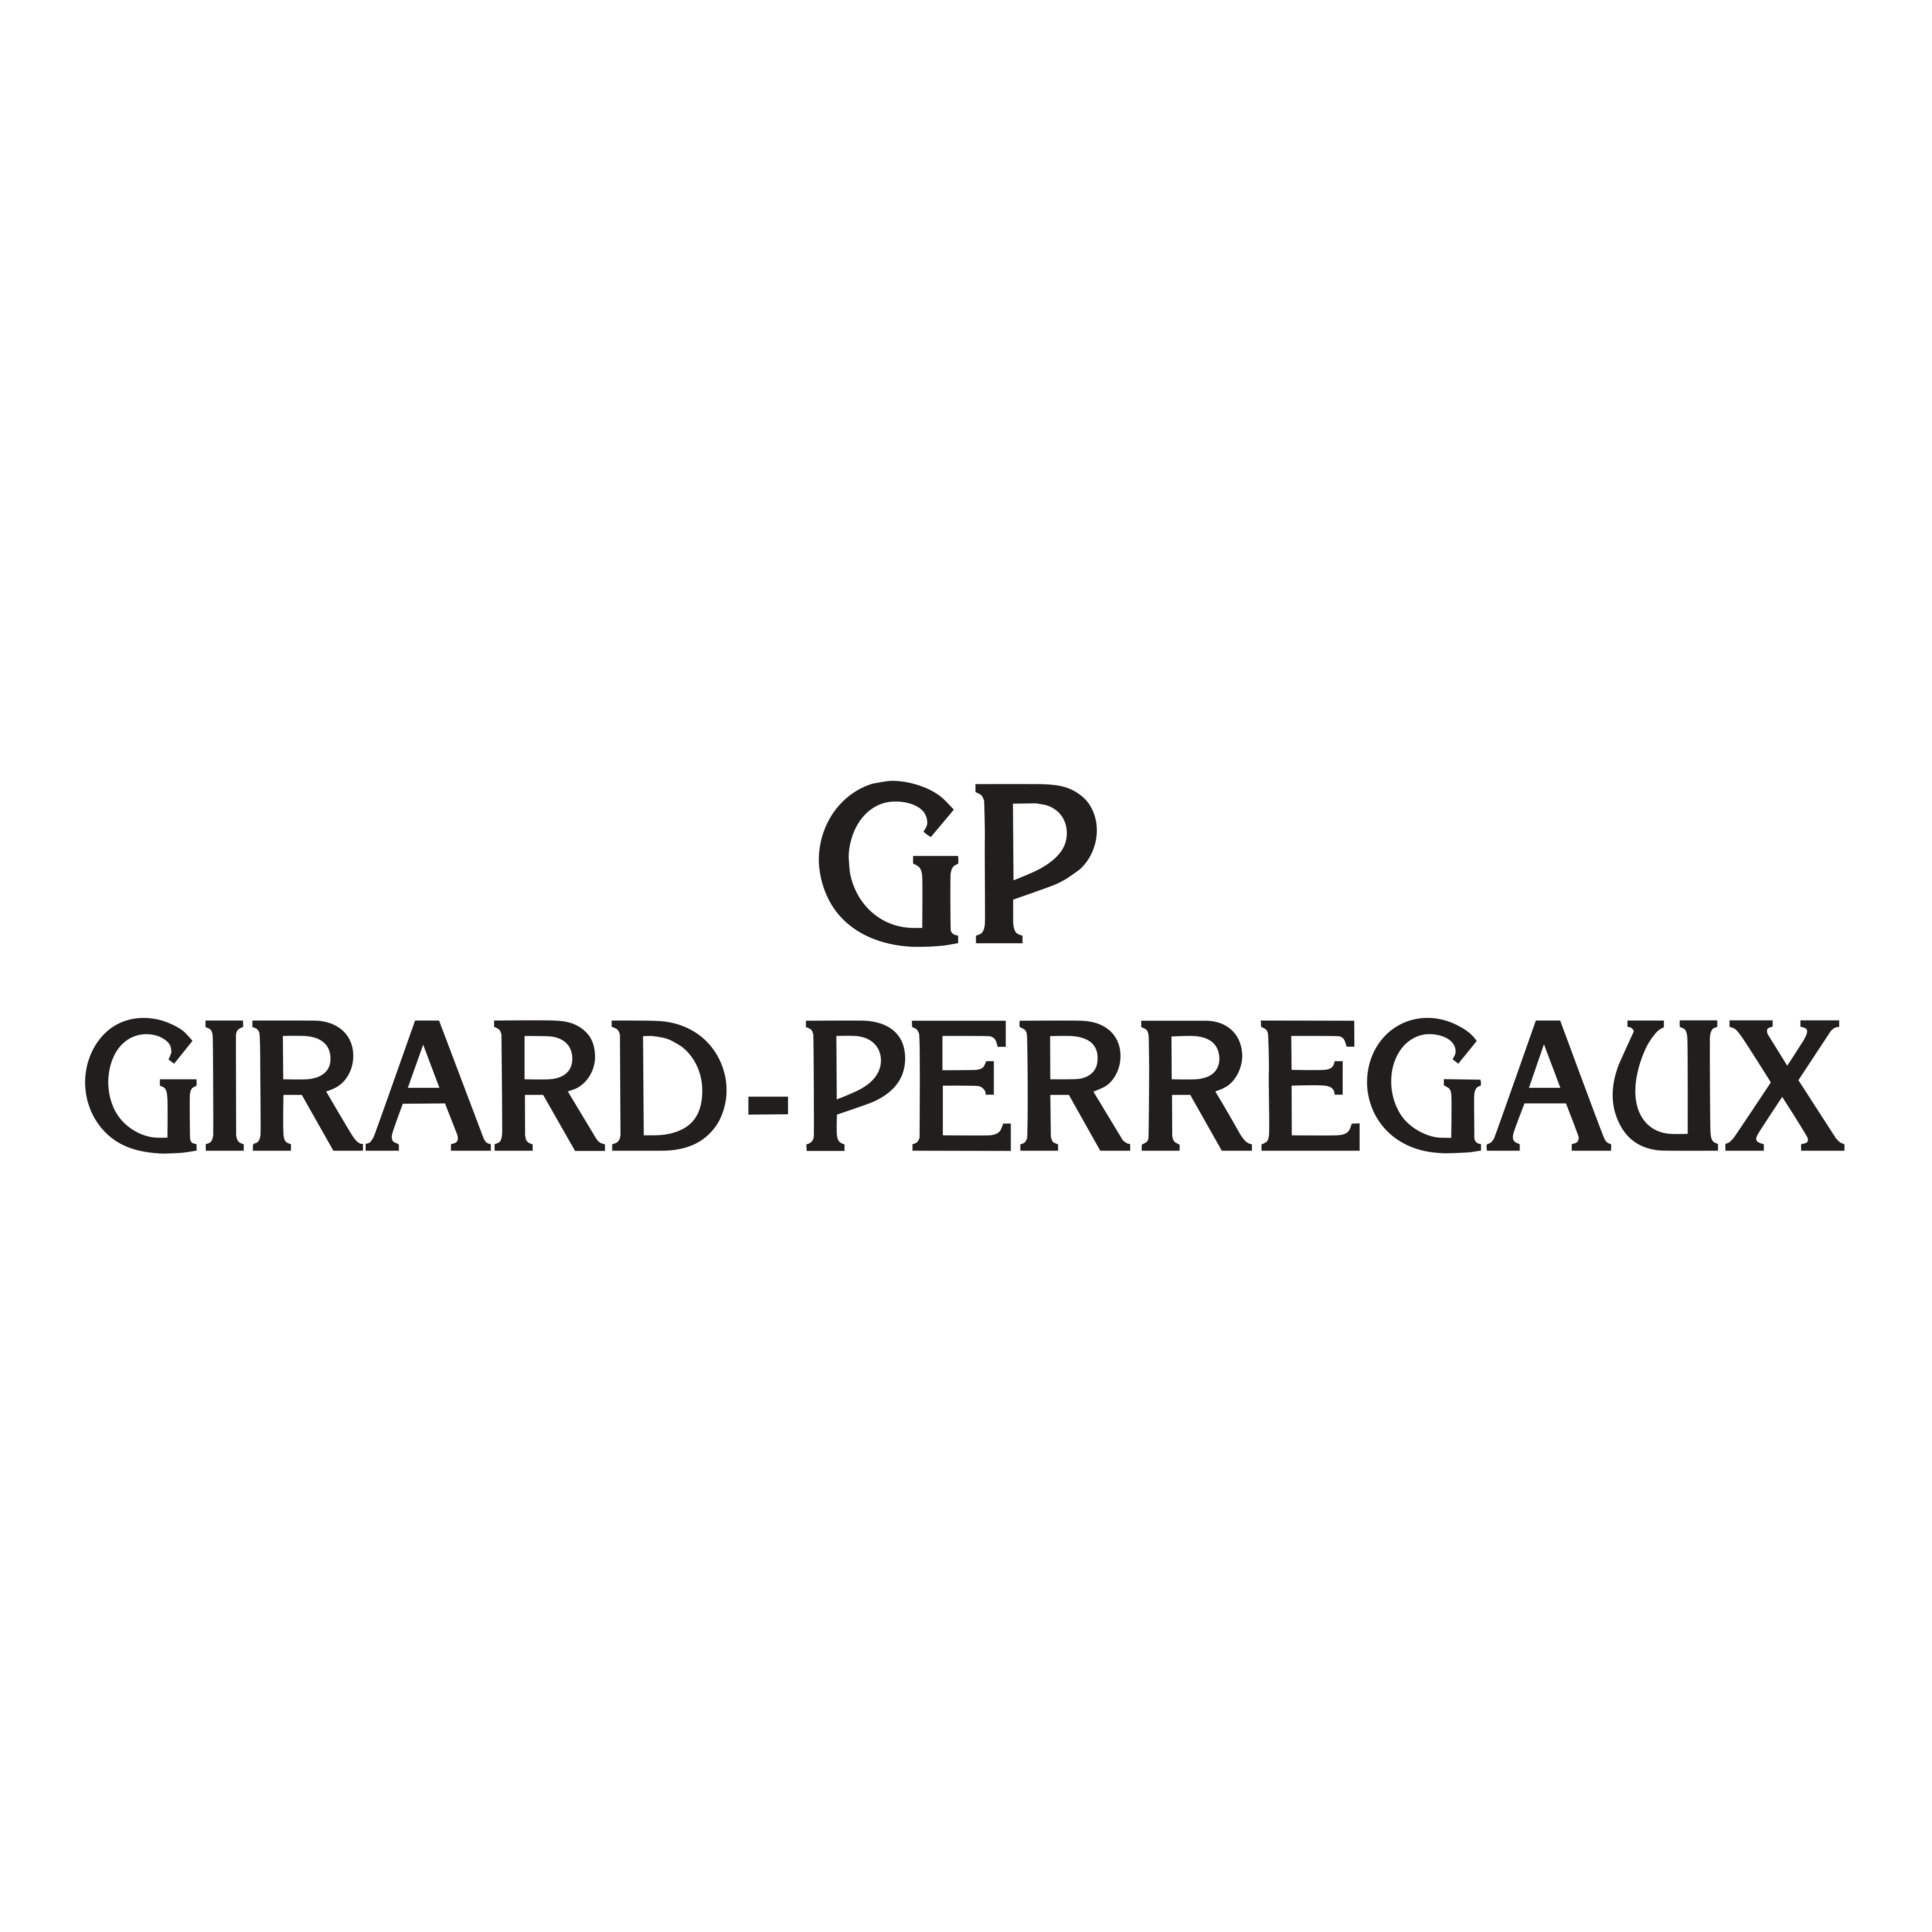 Girard-Perregaux logo - download.